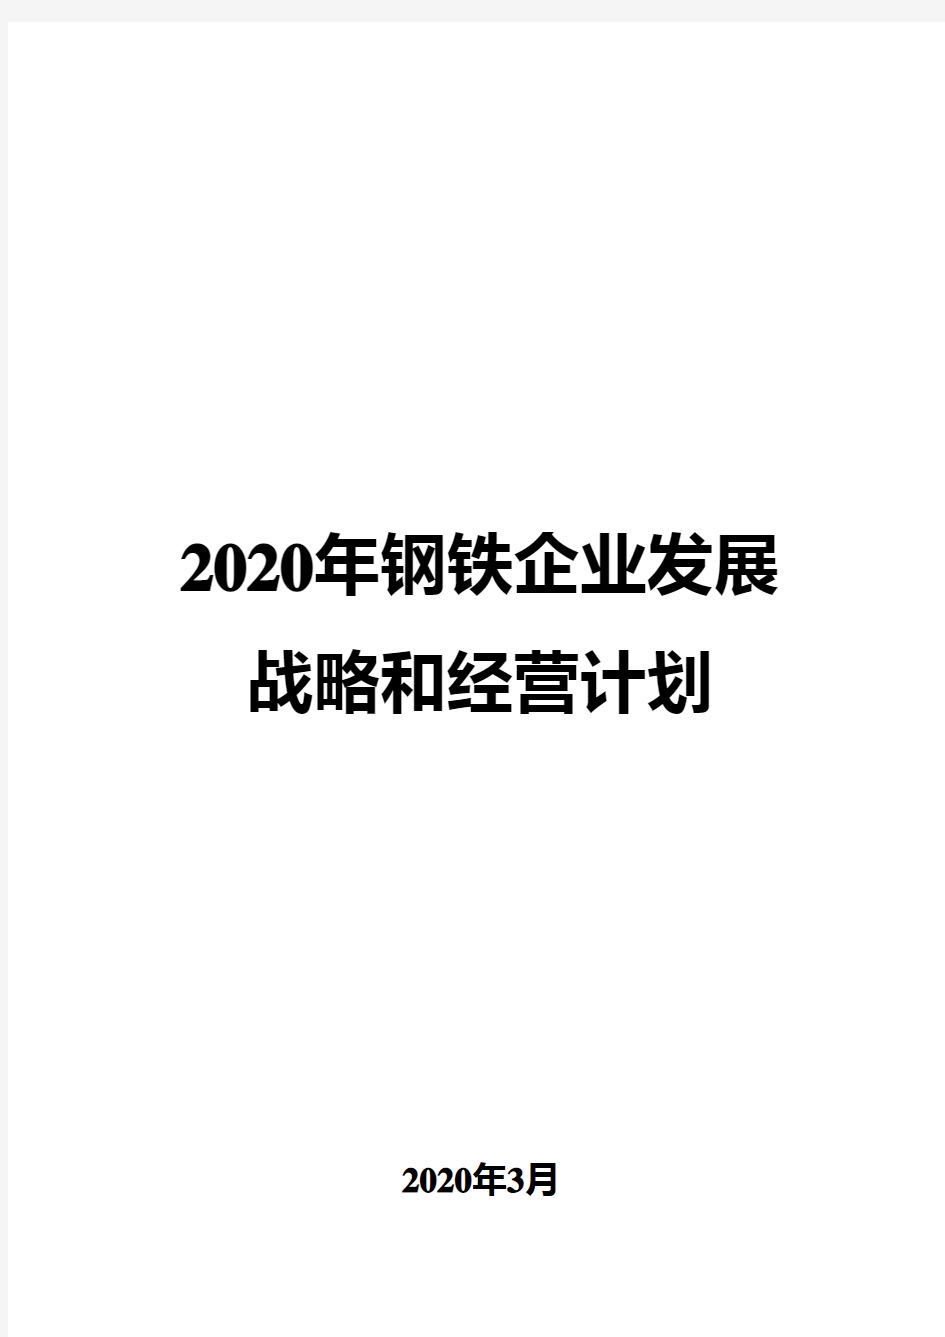 2020年钢铁企业发展战略和经营计划